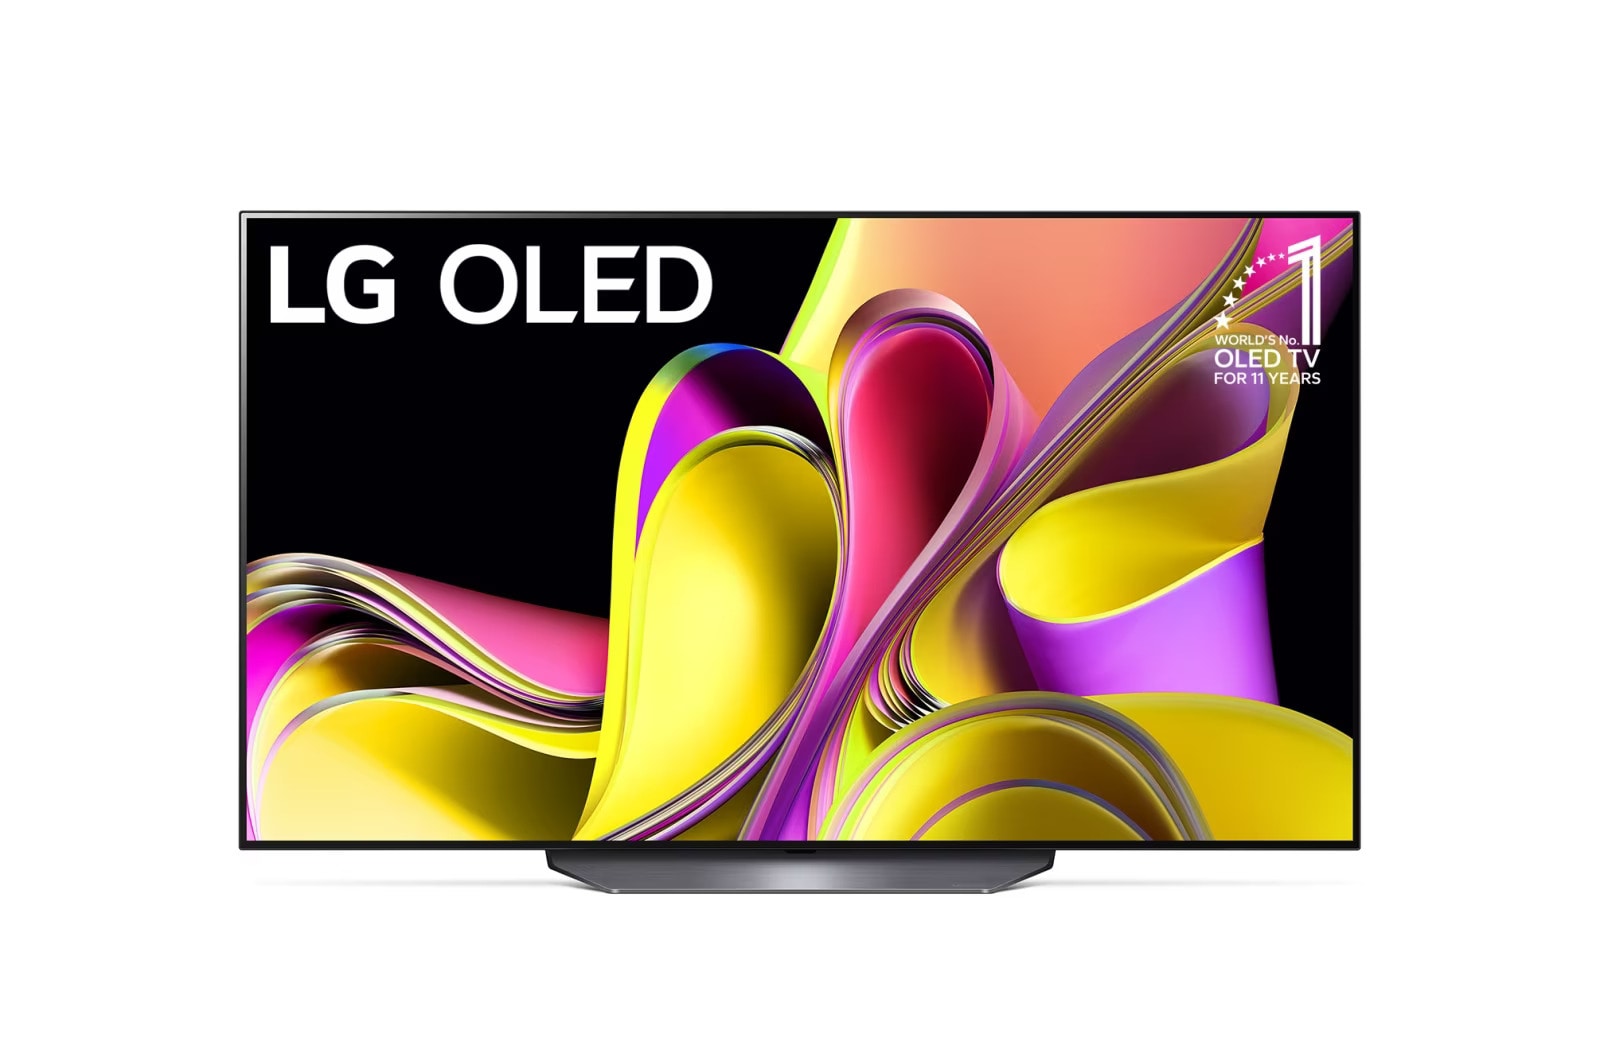 LG Pantalla LG OLED 55 pulgadas 4K SMART TV ThinQ AI OLED55B3PSA, OLED55B3PSA